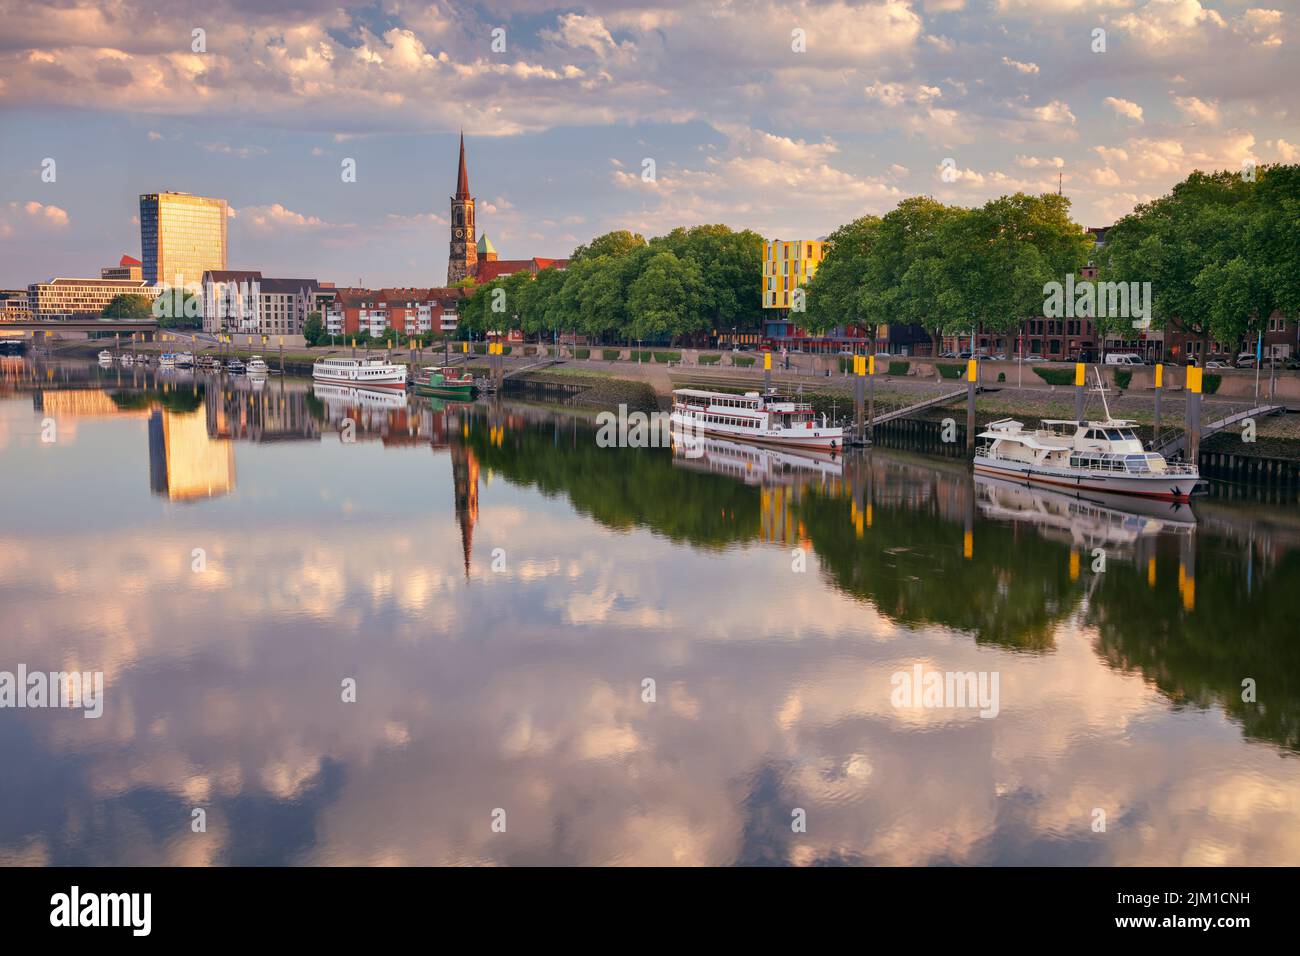 Bremen, Alemania. Imagen del paisaje urbano del río Bremen, Alemania, con reflejo de la iglesia de San Esteban en el río Weser al amanecer de verano. Foto de stock